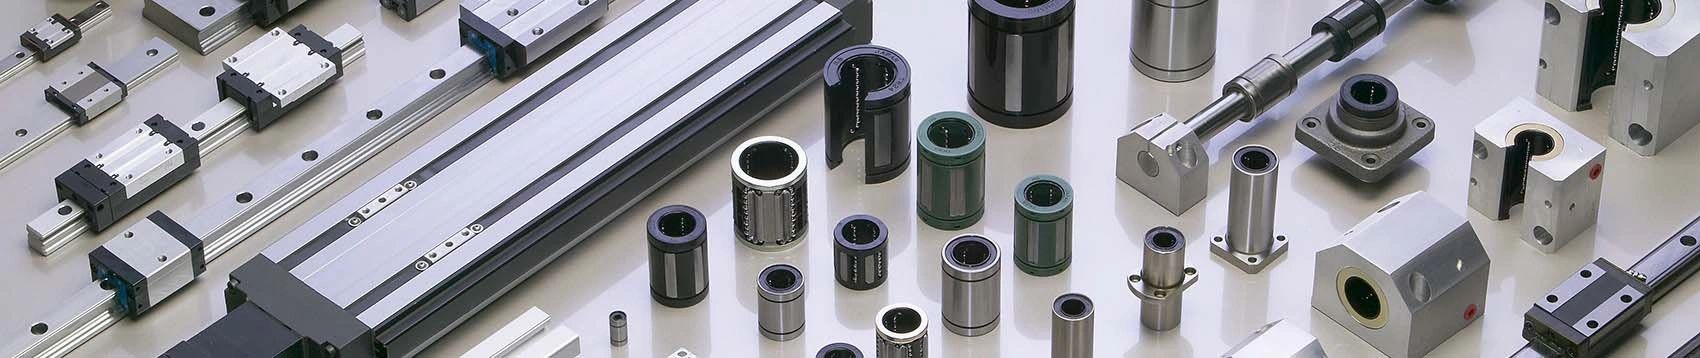 Unique Bargains E-Clip Circlip -4mm External Retaining Shaft Snap Ring  Carbon Steel Black 100pcs 